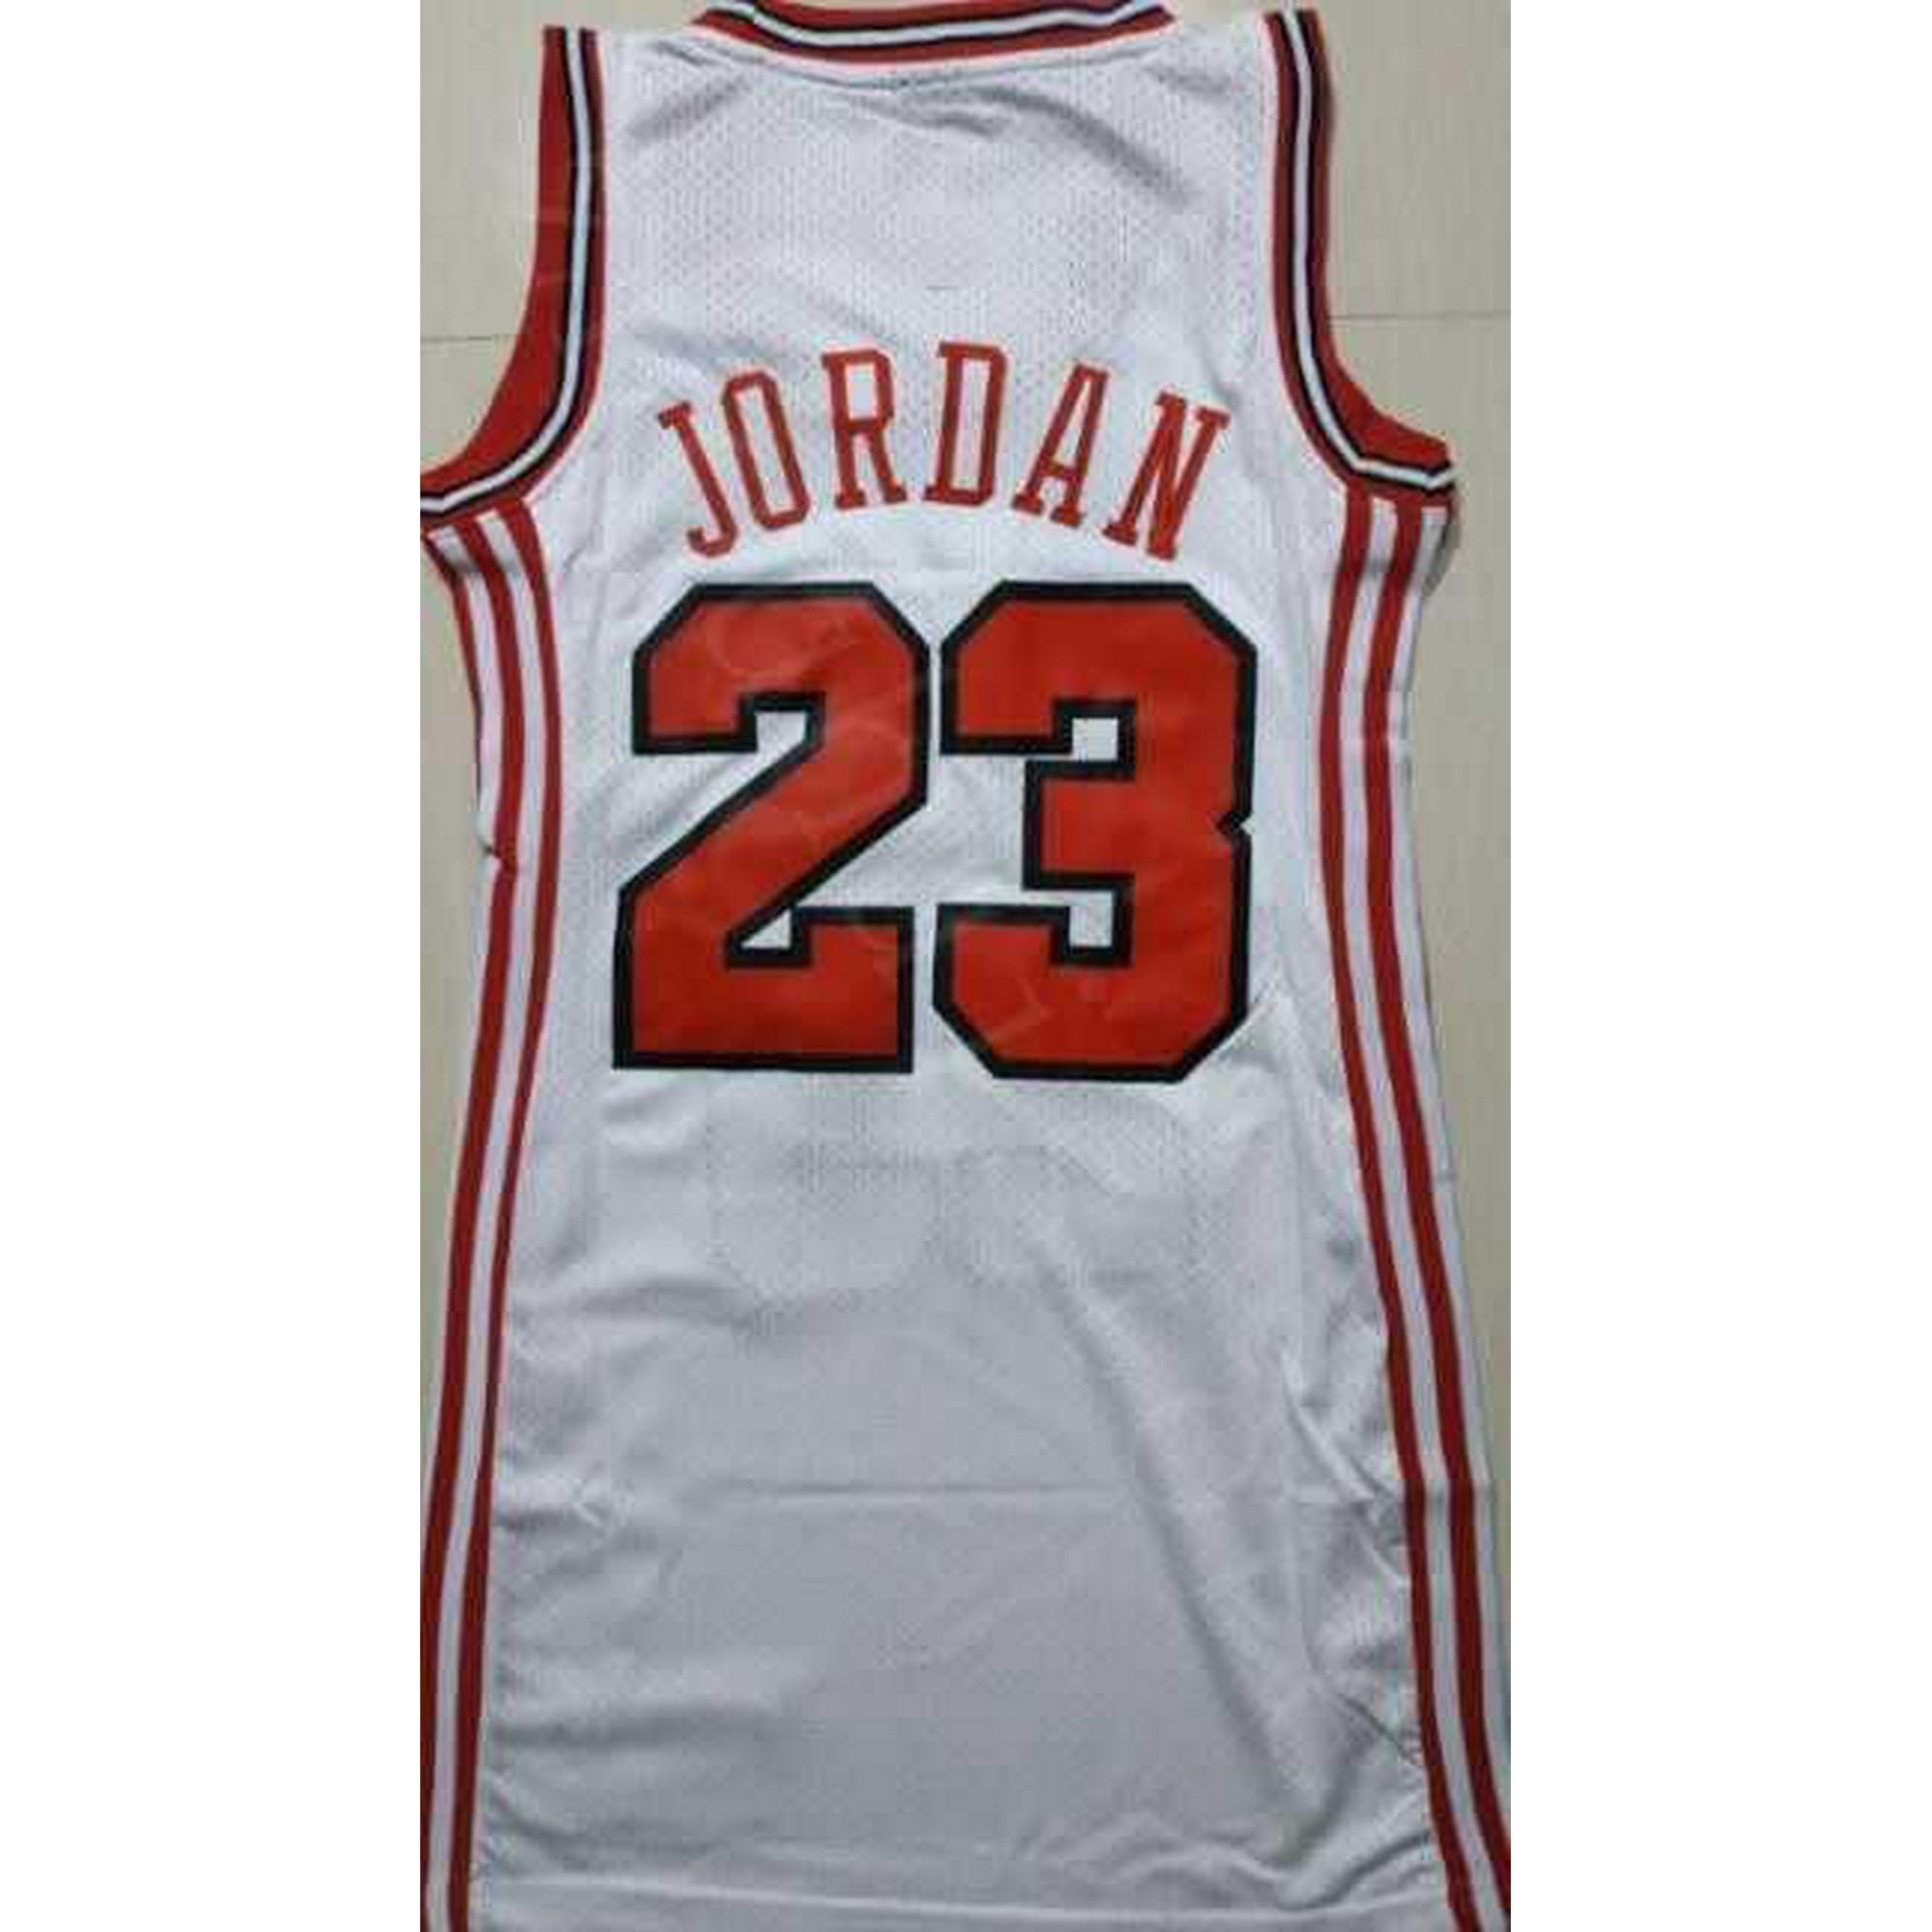 Chicago Bulls 23 MJ High Quality NBA Basketball Sando Jersey for